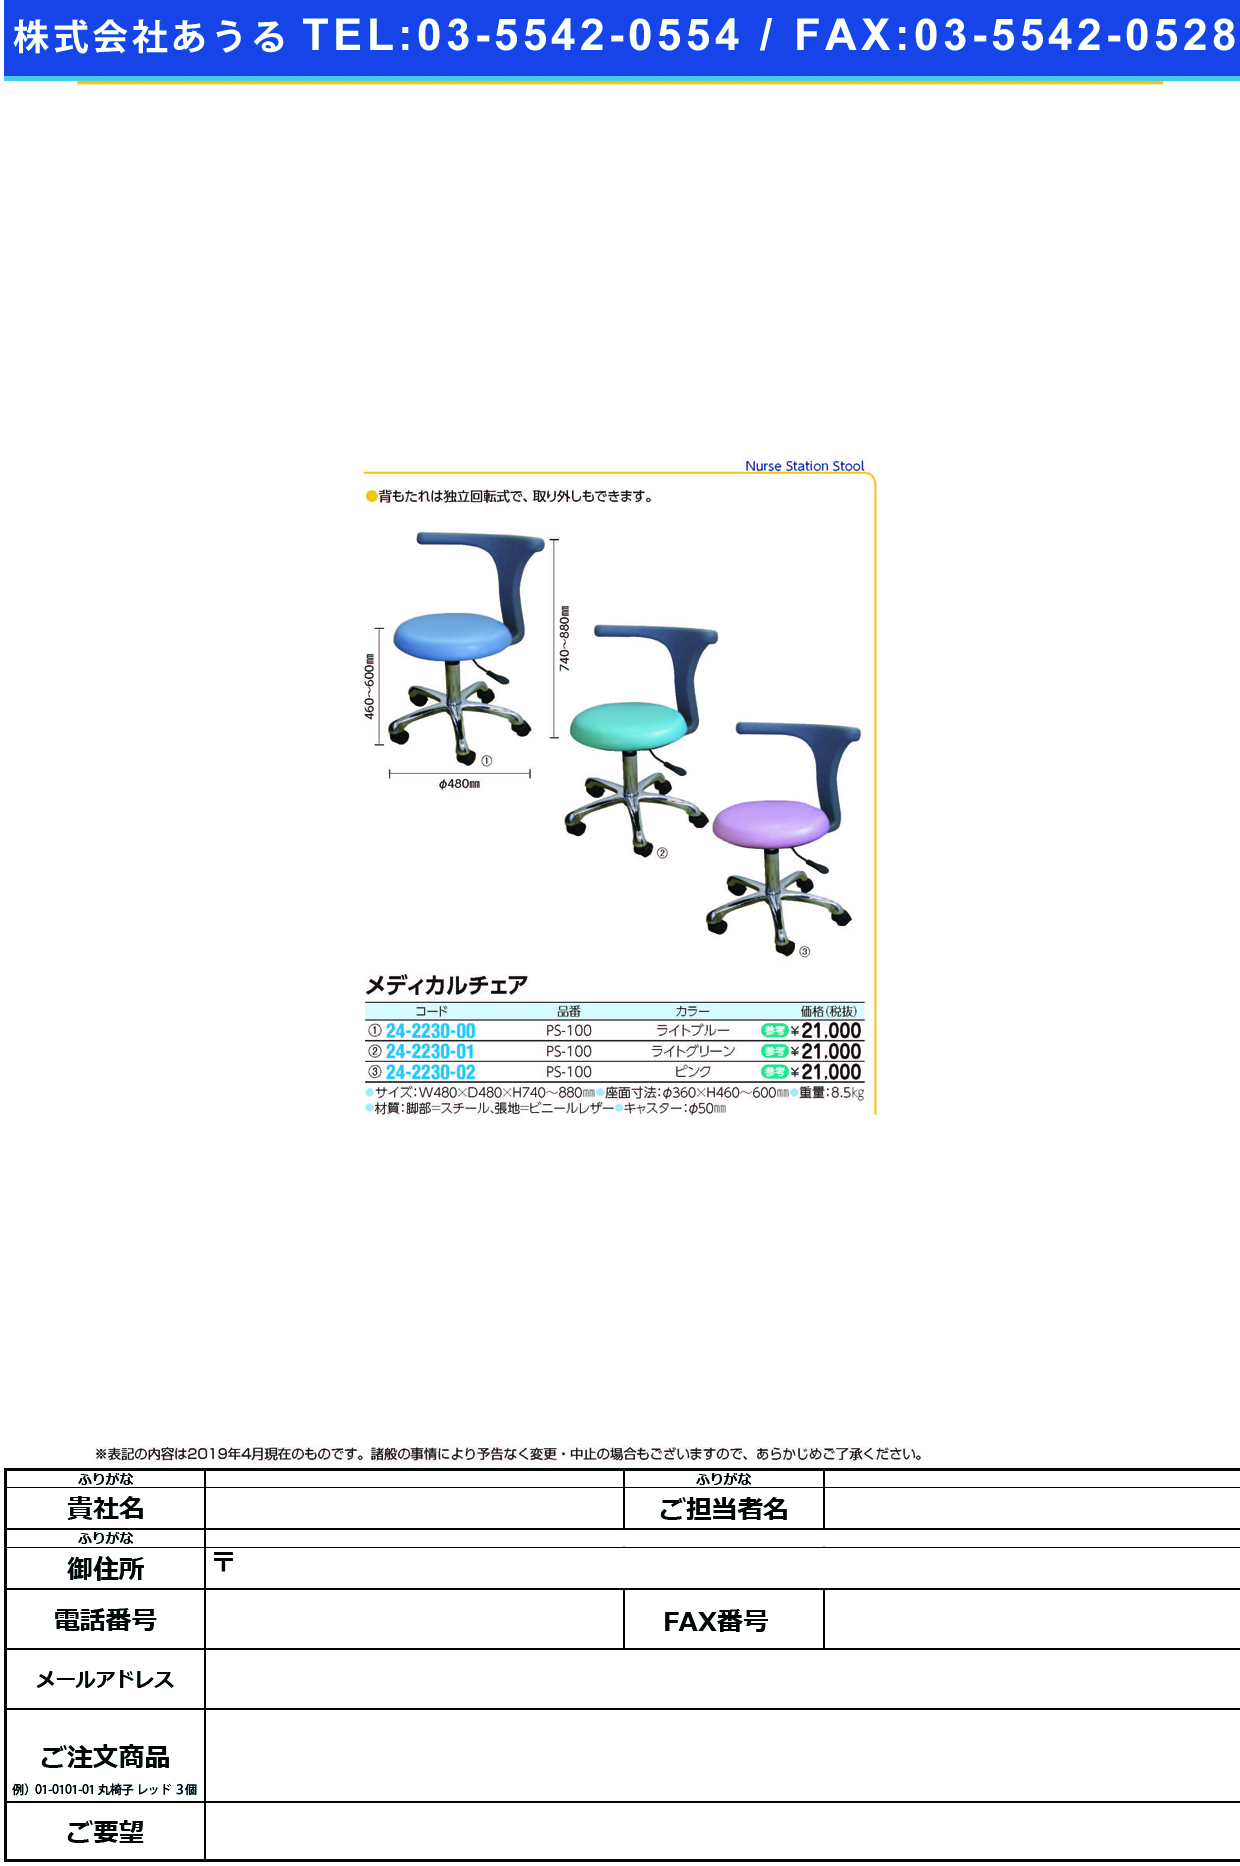 (24-2230-02)メディカルチェア PS-100(ﾋﾟﾝｸ) ﾒﾃﾞｨｶﾙﾁｪｱ【1台単位】【2019年カタログ商品】